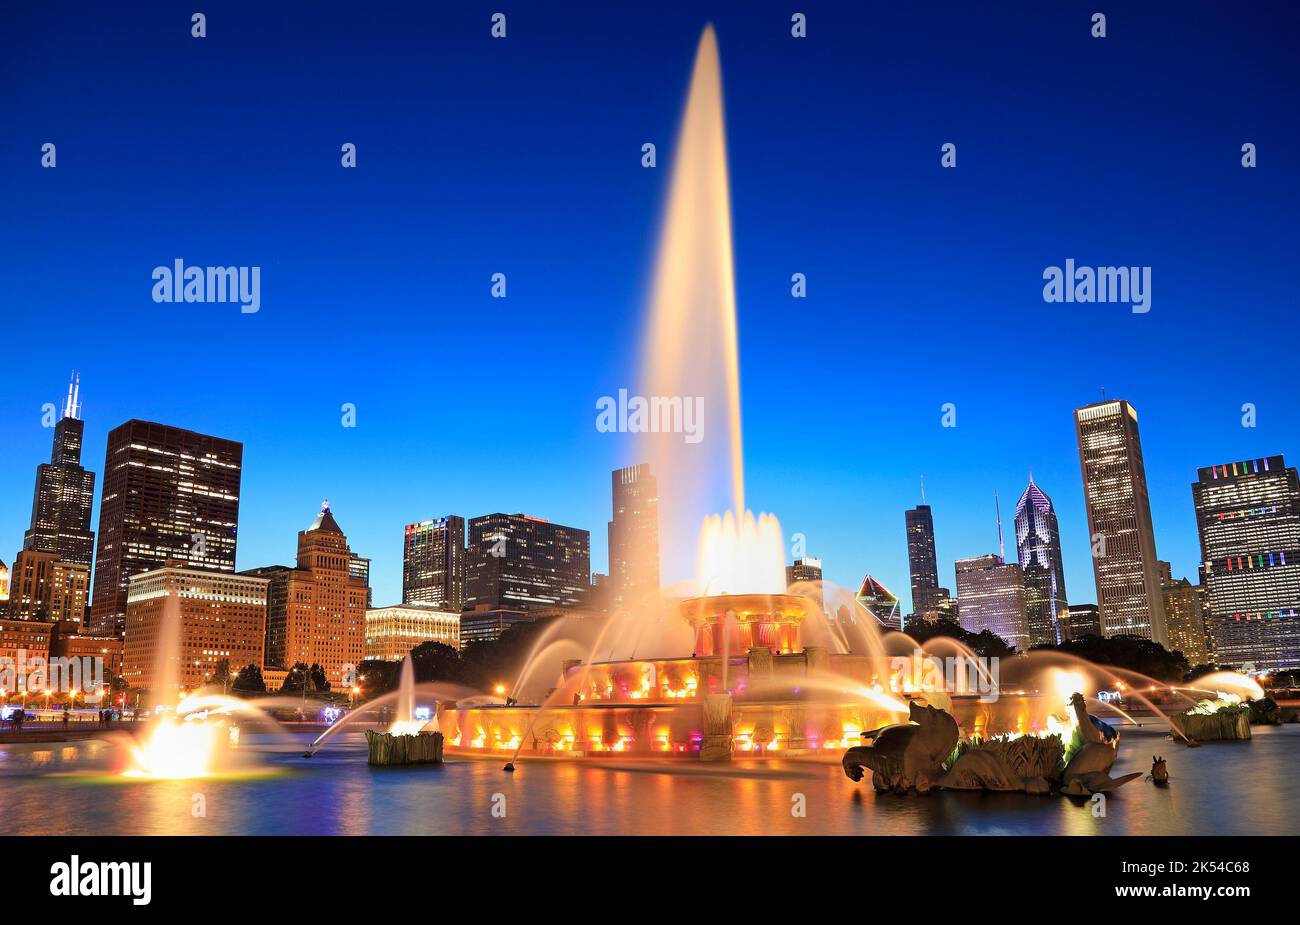 Horizon de Chicago illuminé au crépuscule avec fontaine colorée de Buckingham en premier plan, Illinois, États-Unis Banque D'Images